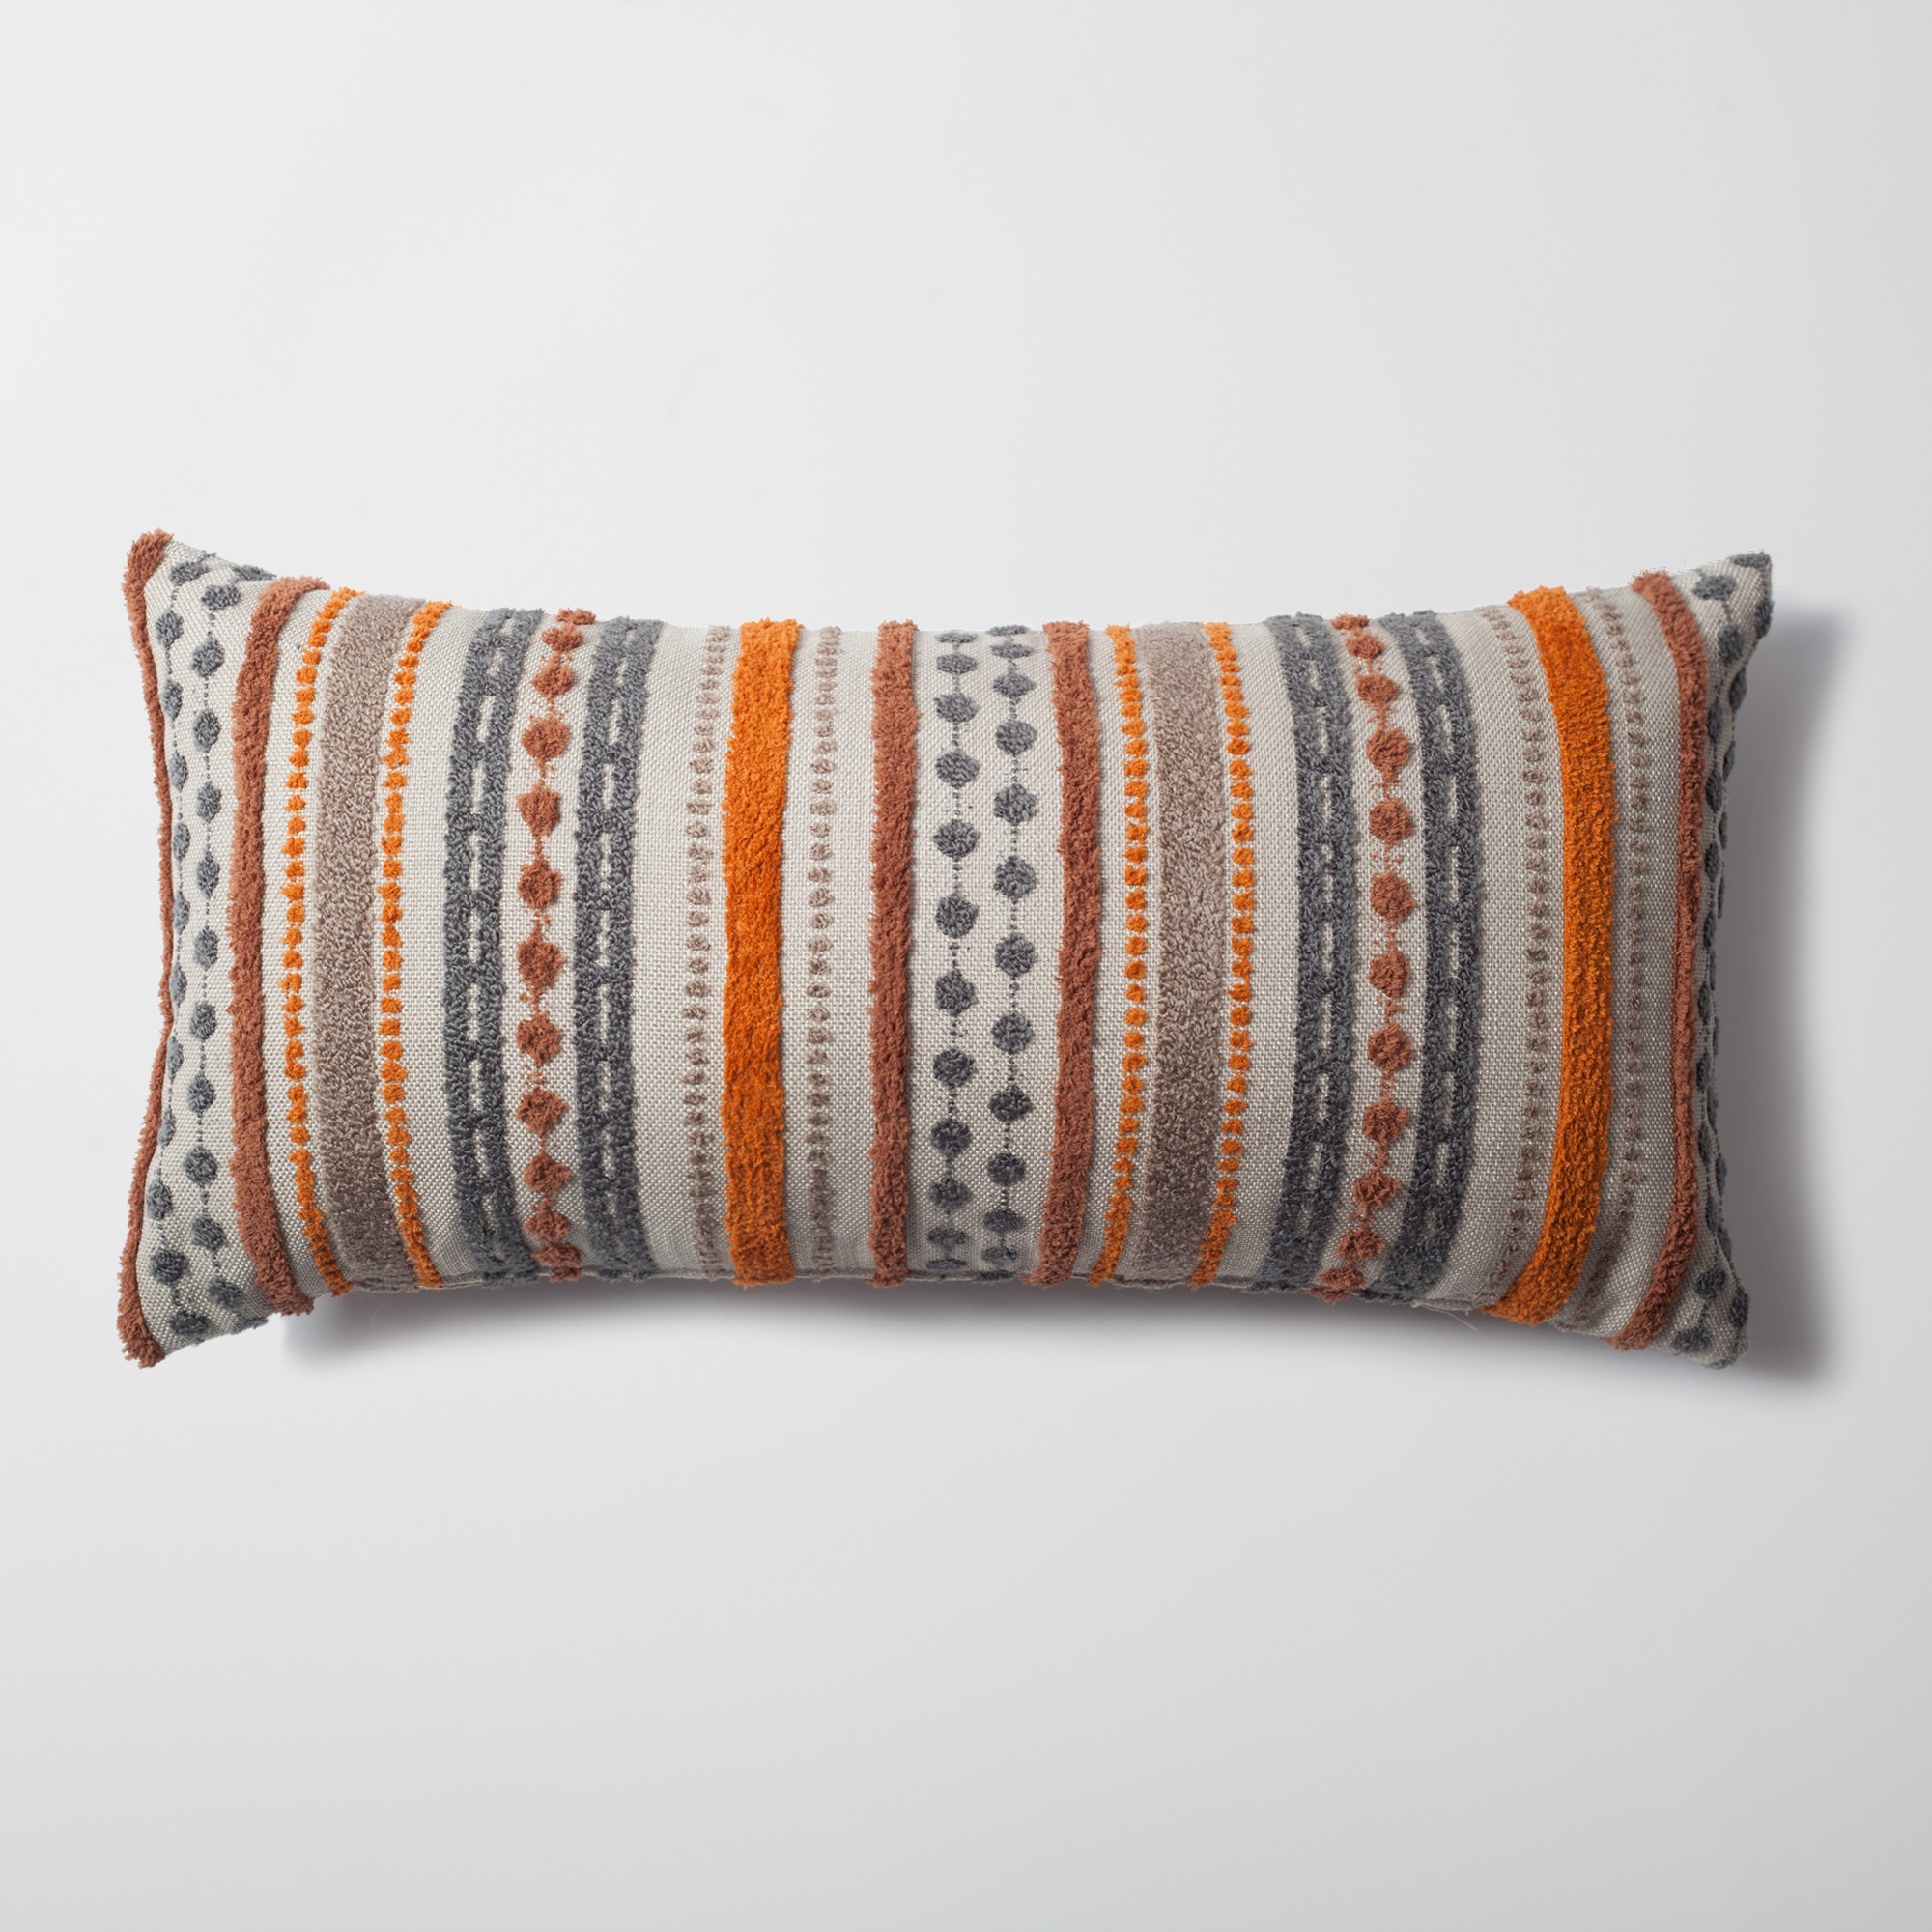 Nomad - Multicolored Striped Linen Decorative Pillow 14x28 Inch - Orange